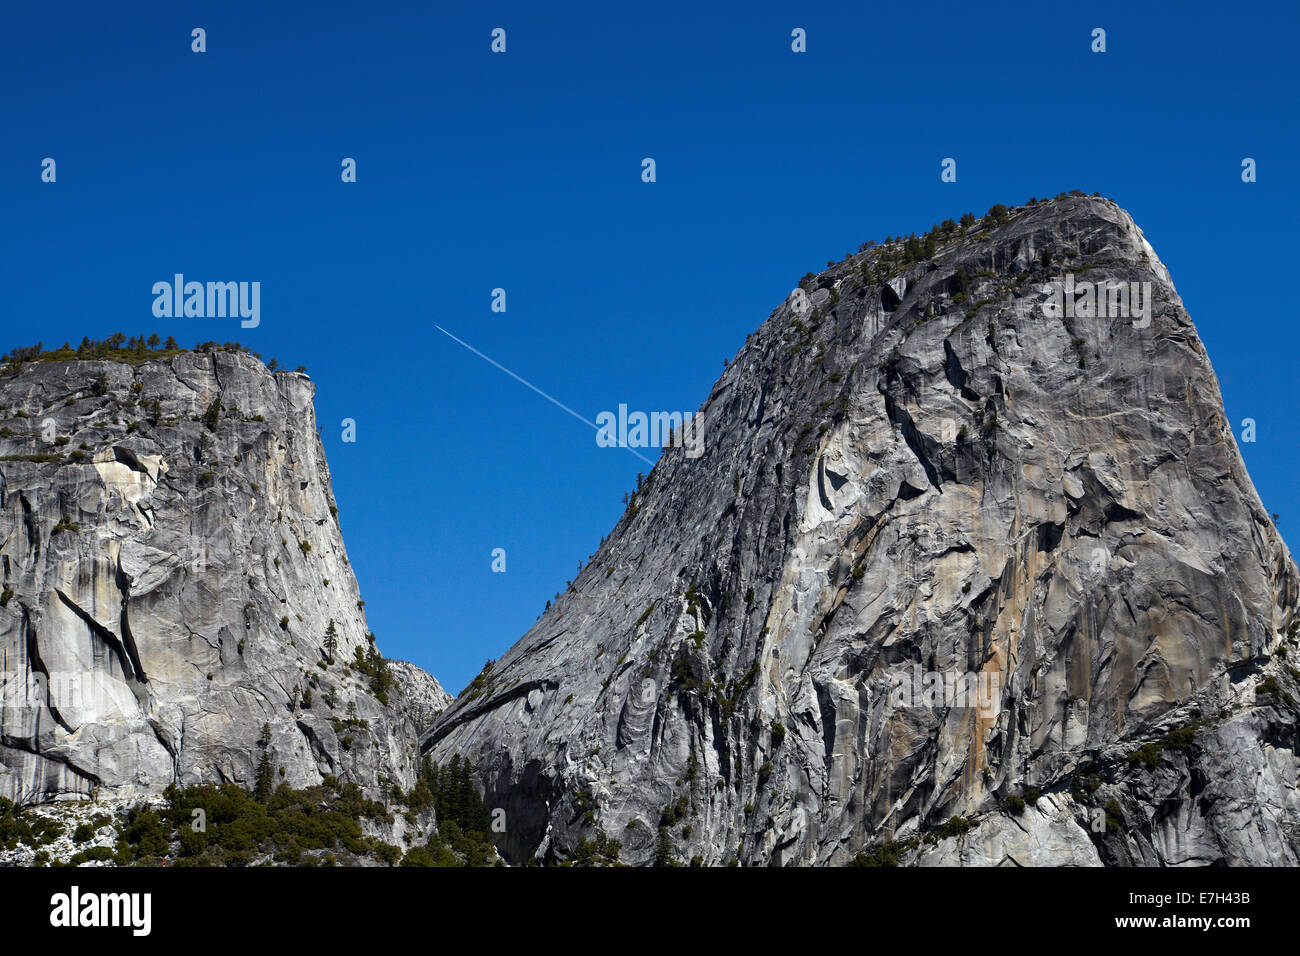 Cupola di granito di Liberty Cap e jet contrail, sul sentiero di nebbia, Yosemite National Park, California, Stati Uniti d'America Foto Stock